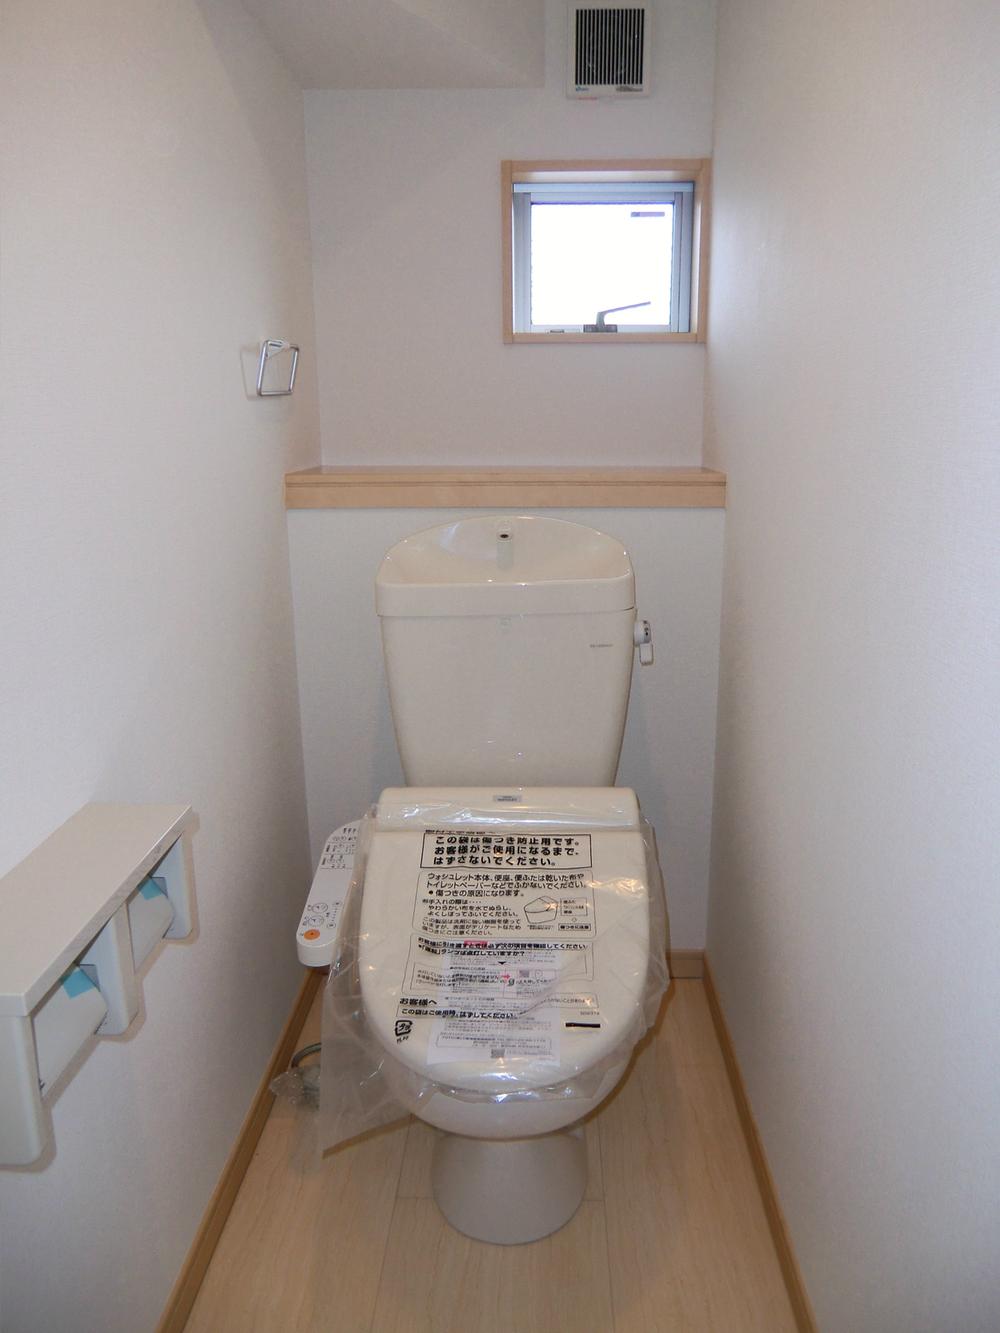 Toilet. ◇ toilet ◇  1st floor ・ Second floor Bidet